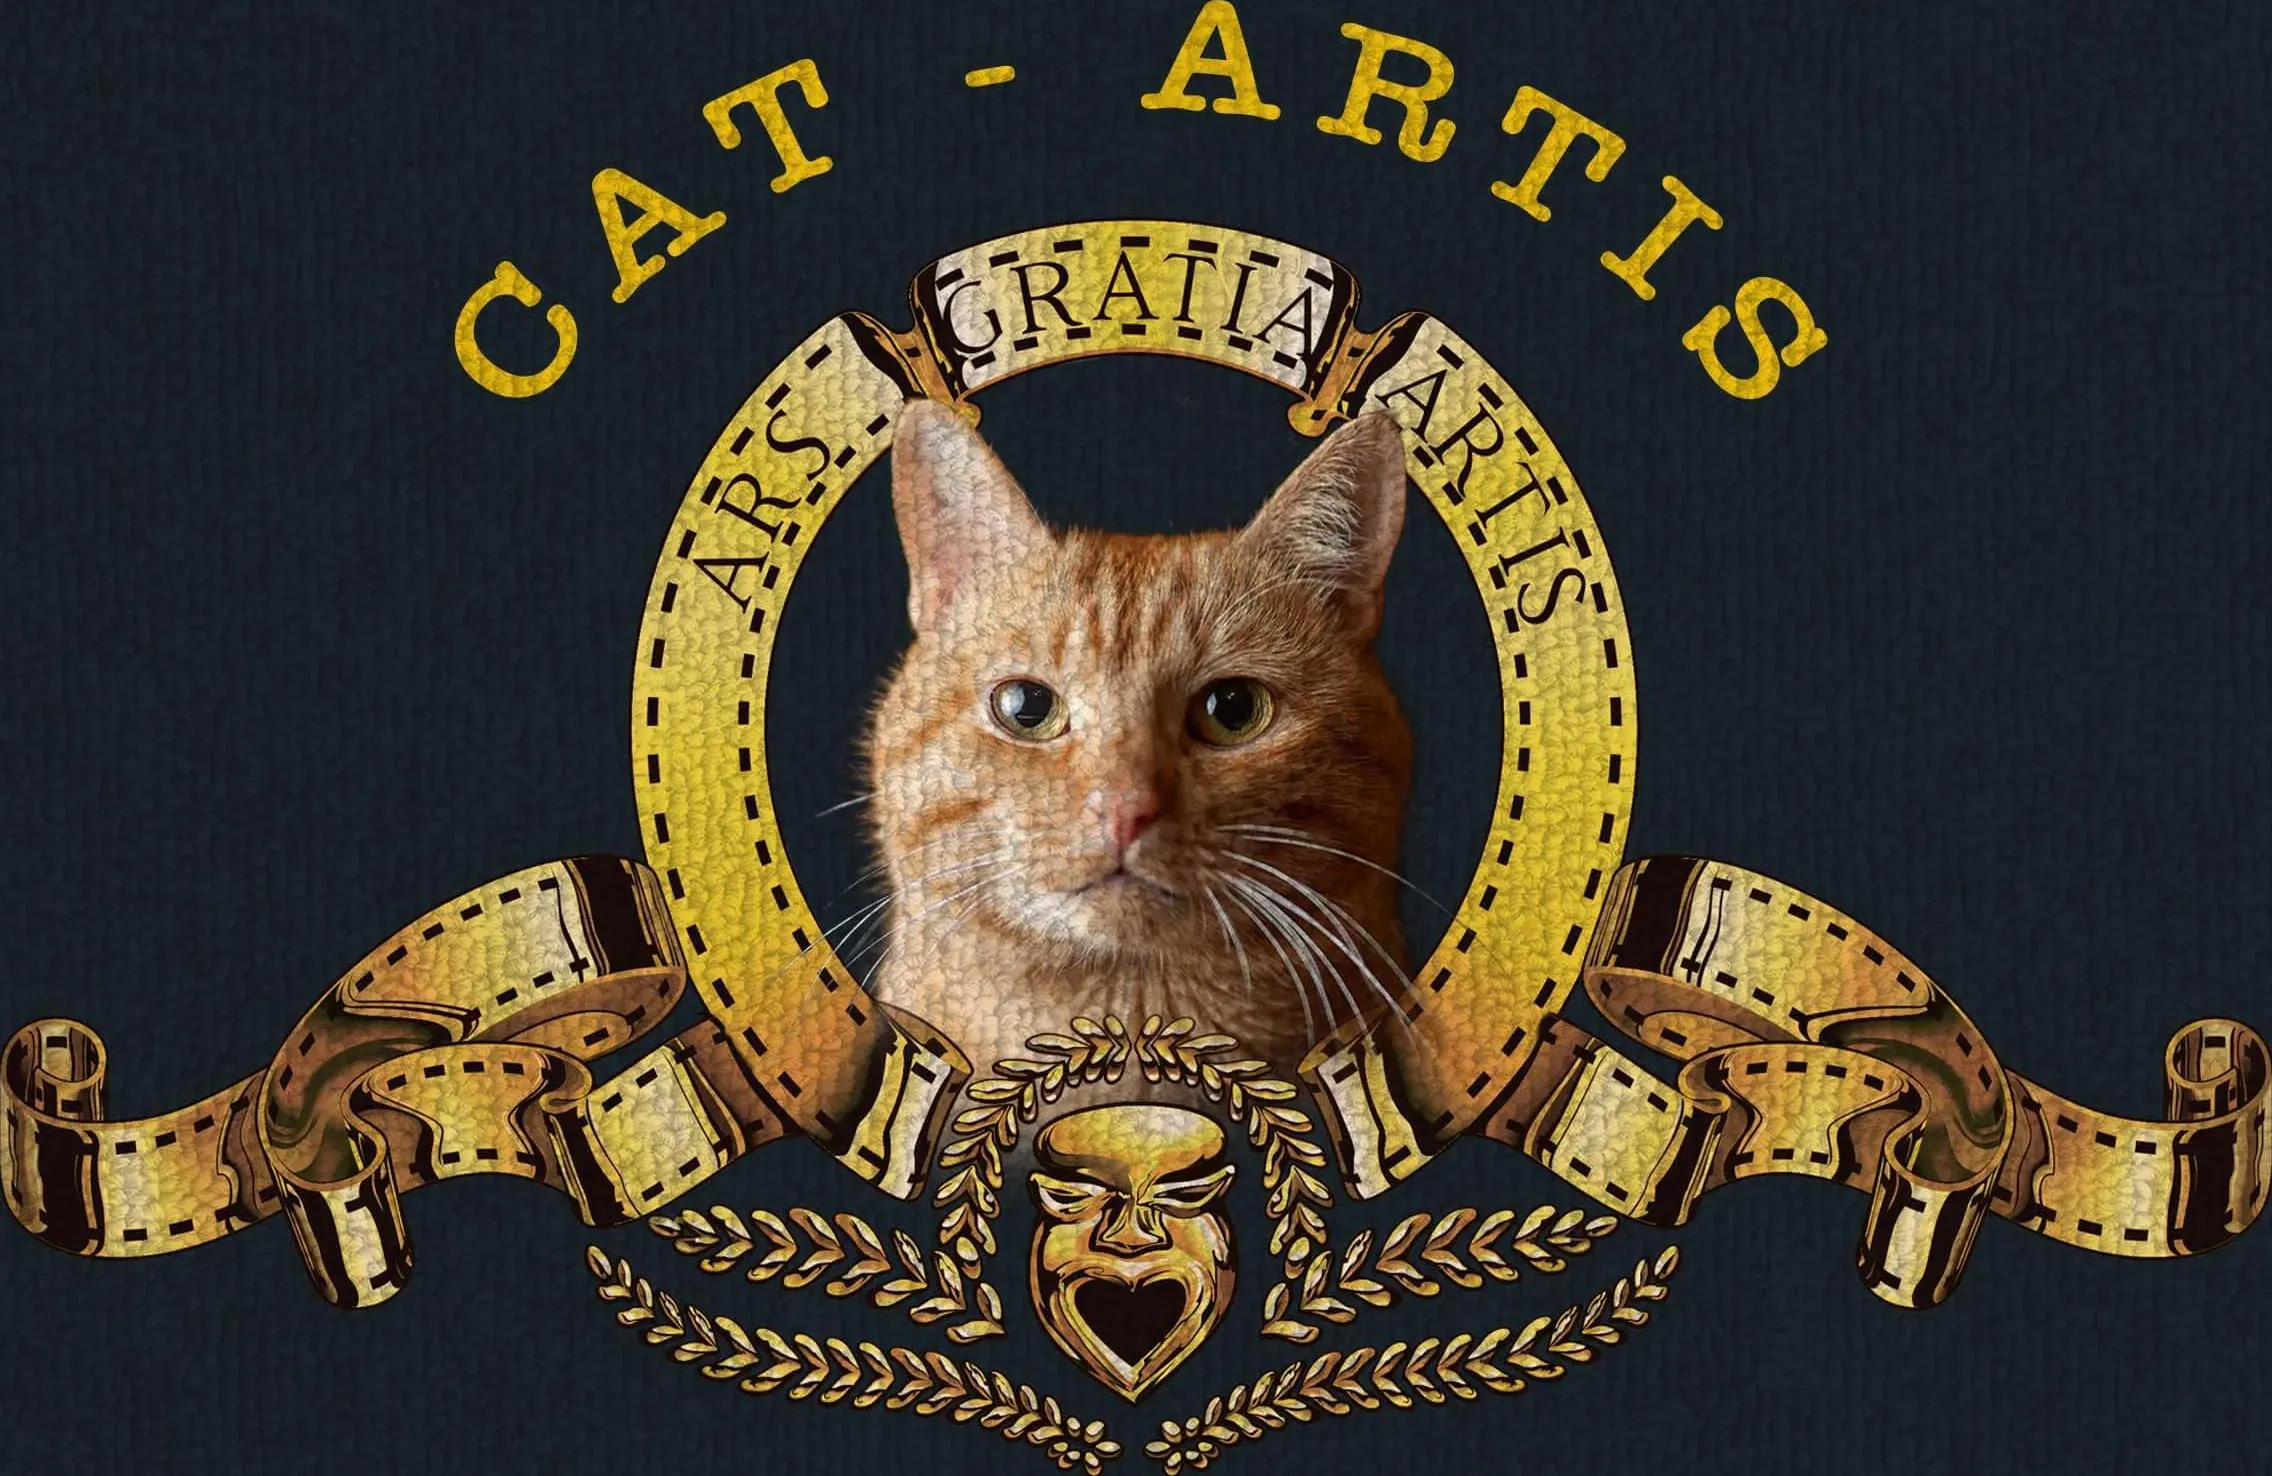 Cat-artis